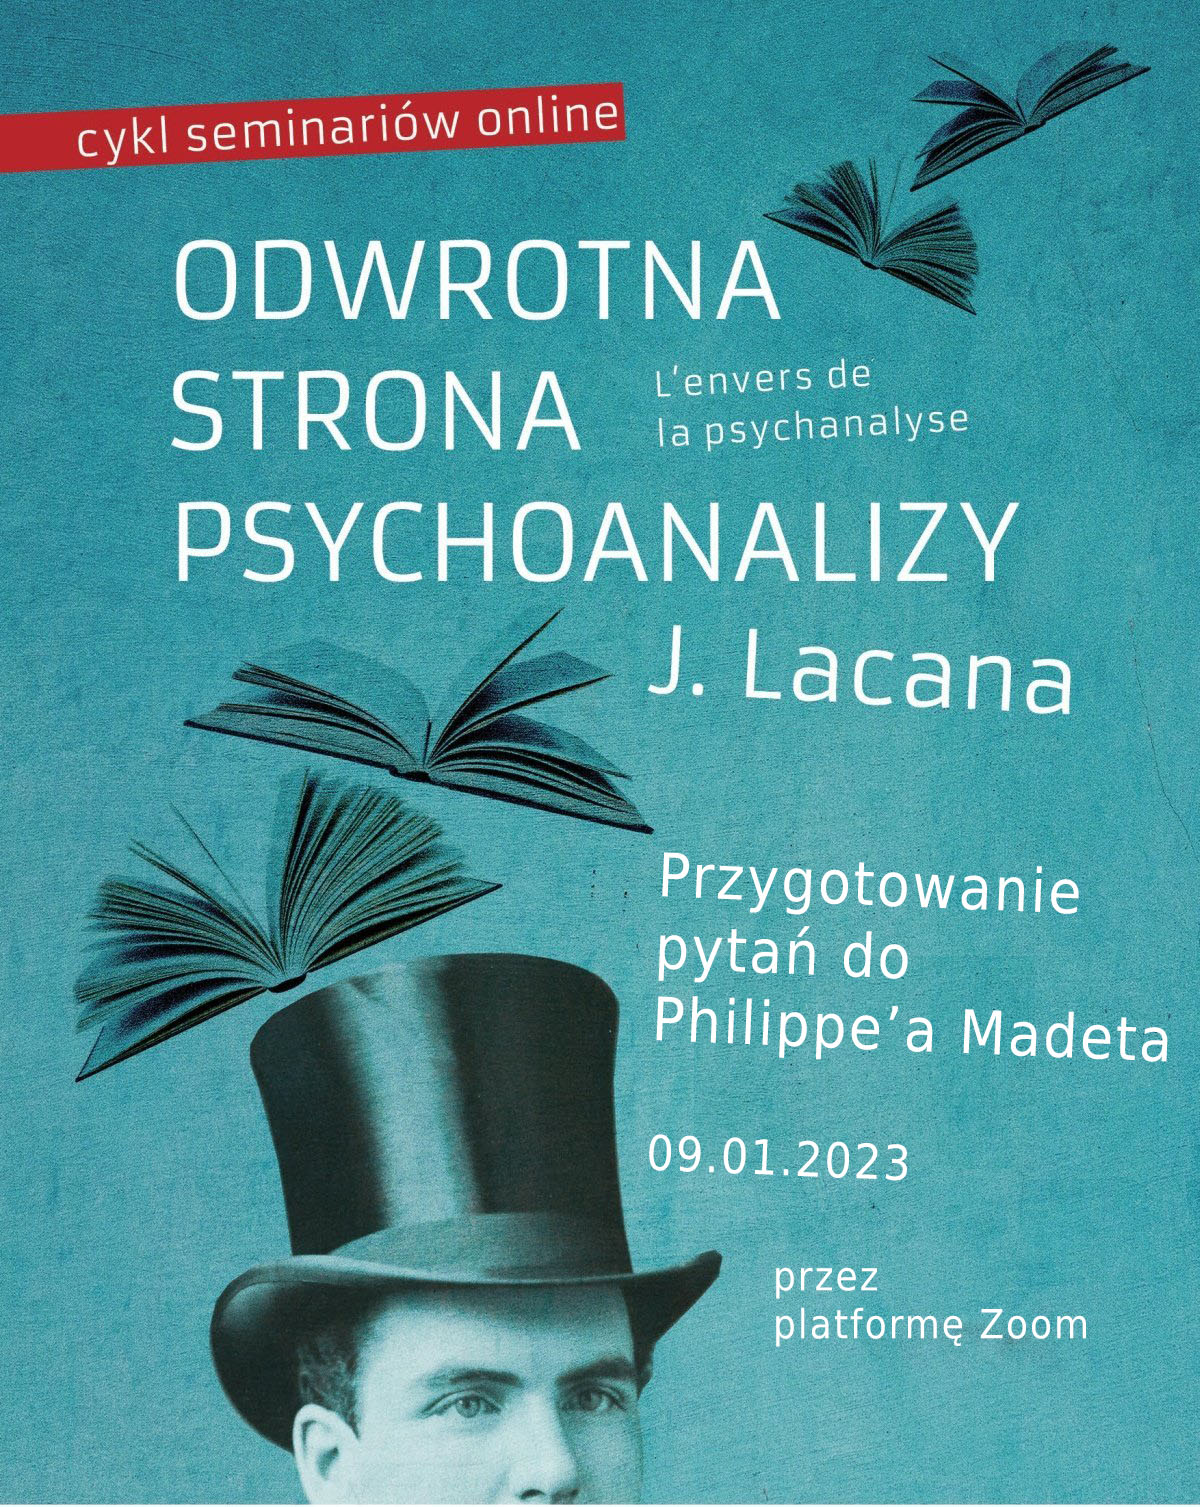 Czytanie Seminarium XVII Lacana - Odwrotna strona psychoanalizy